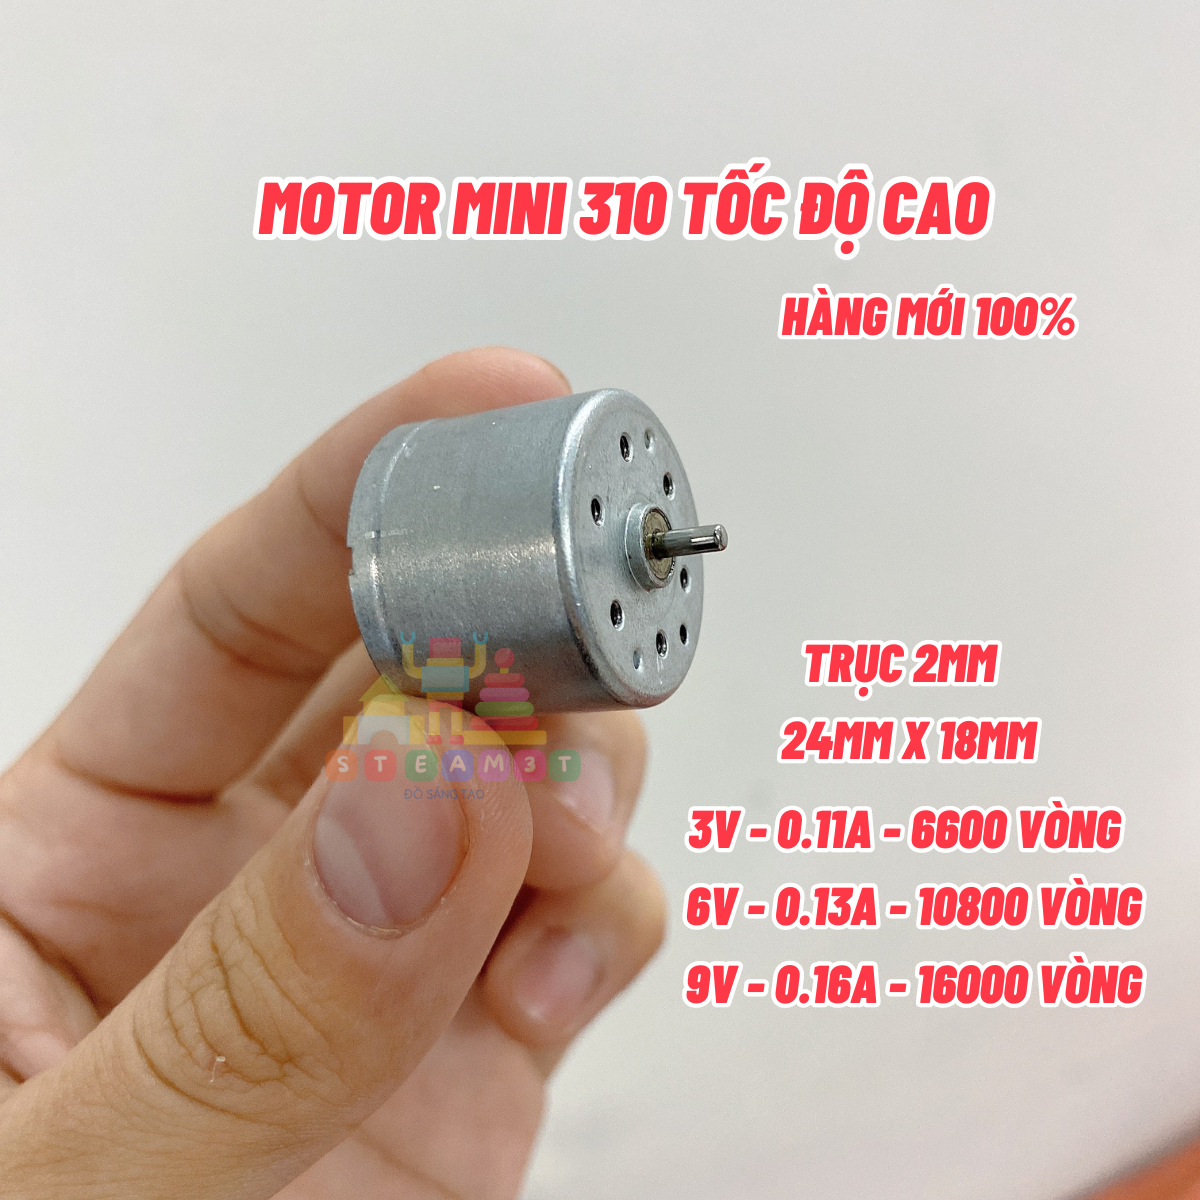 Motor mini 310 3v - 6v tốc độ cao 6600 - 10800 - 17000 RPM thích hợp làm quạt mini - LK0012